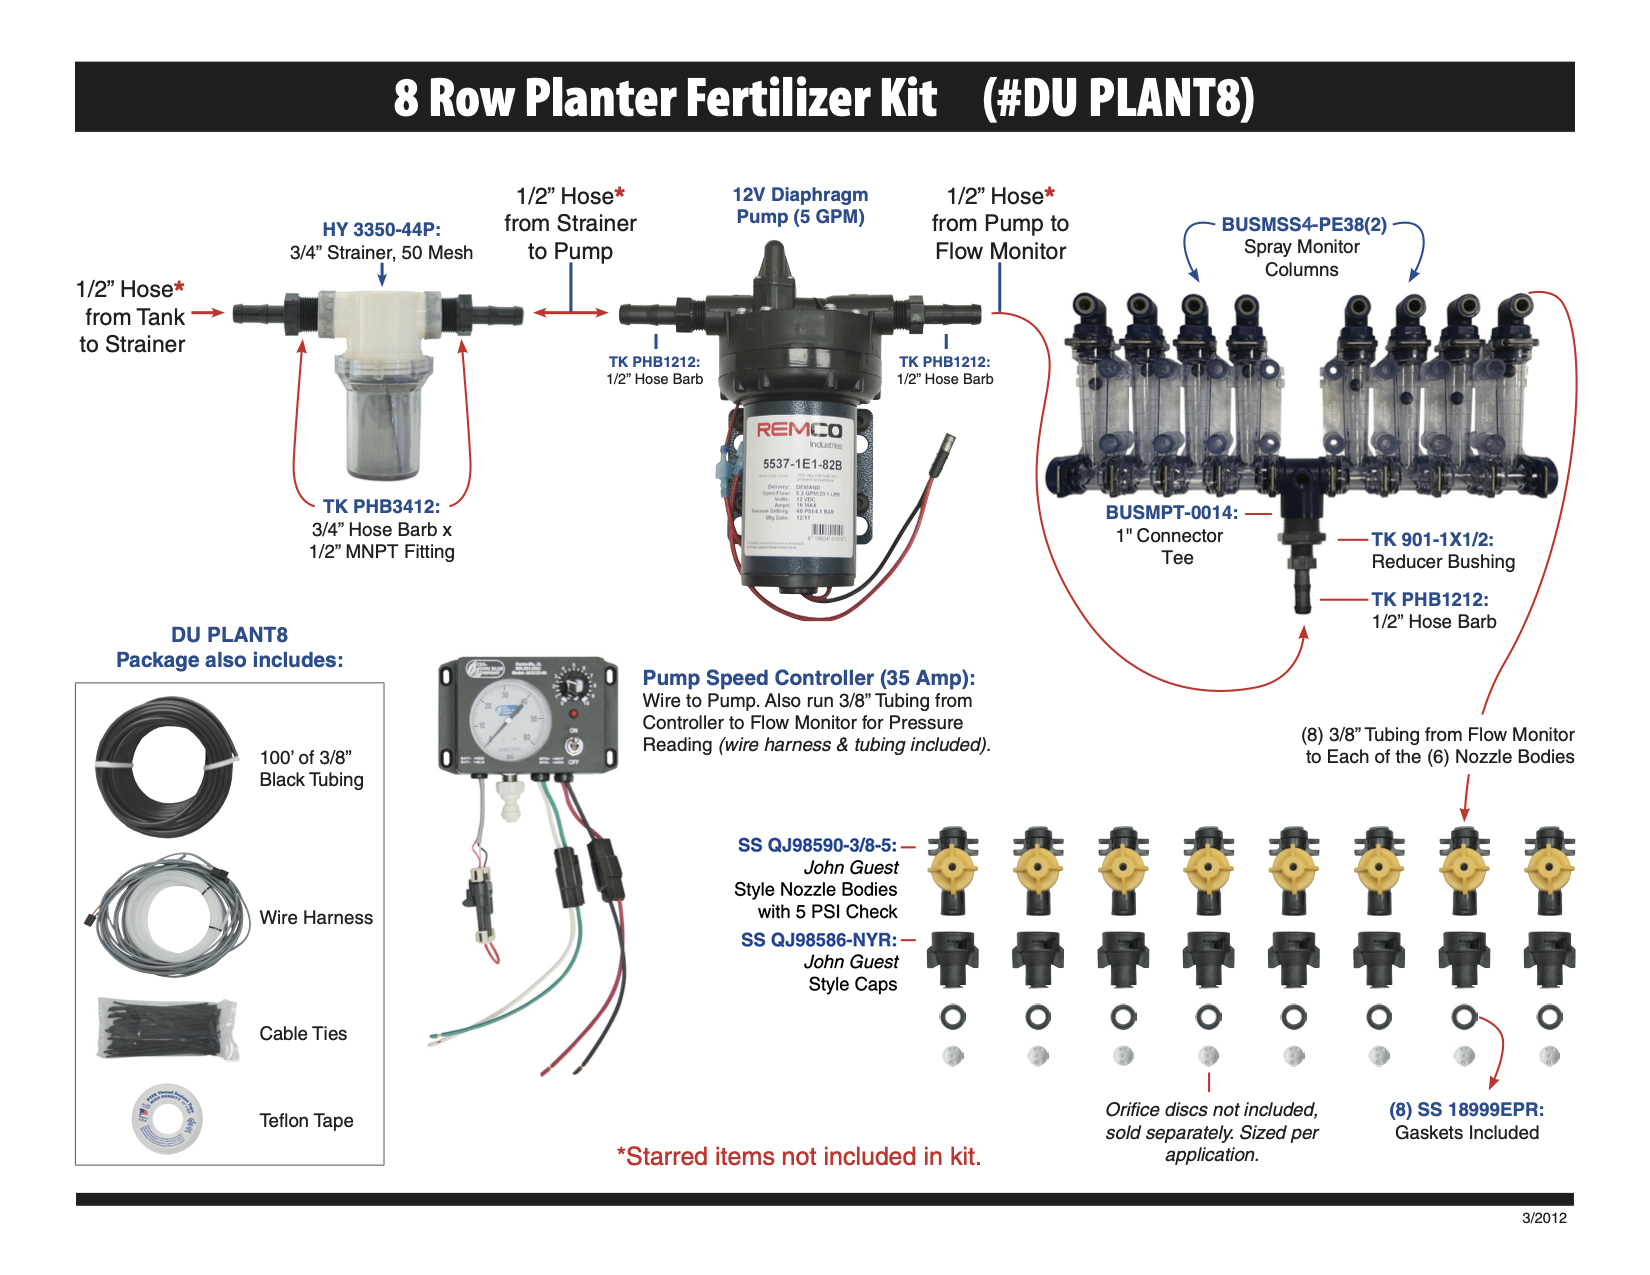 Picture of Planter Fertilizer Kit, 8 Row